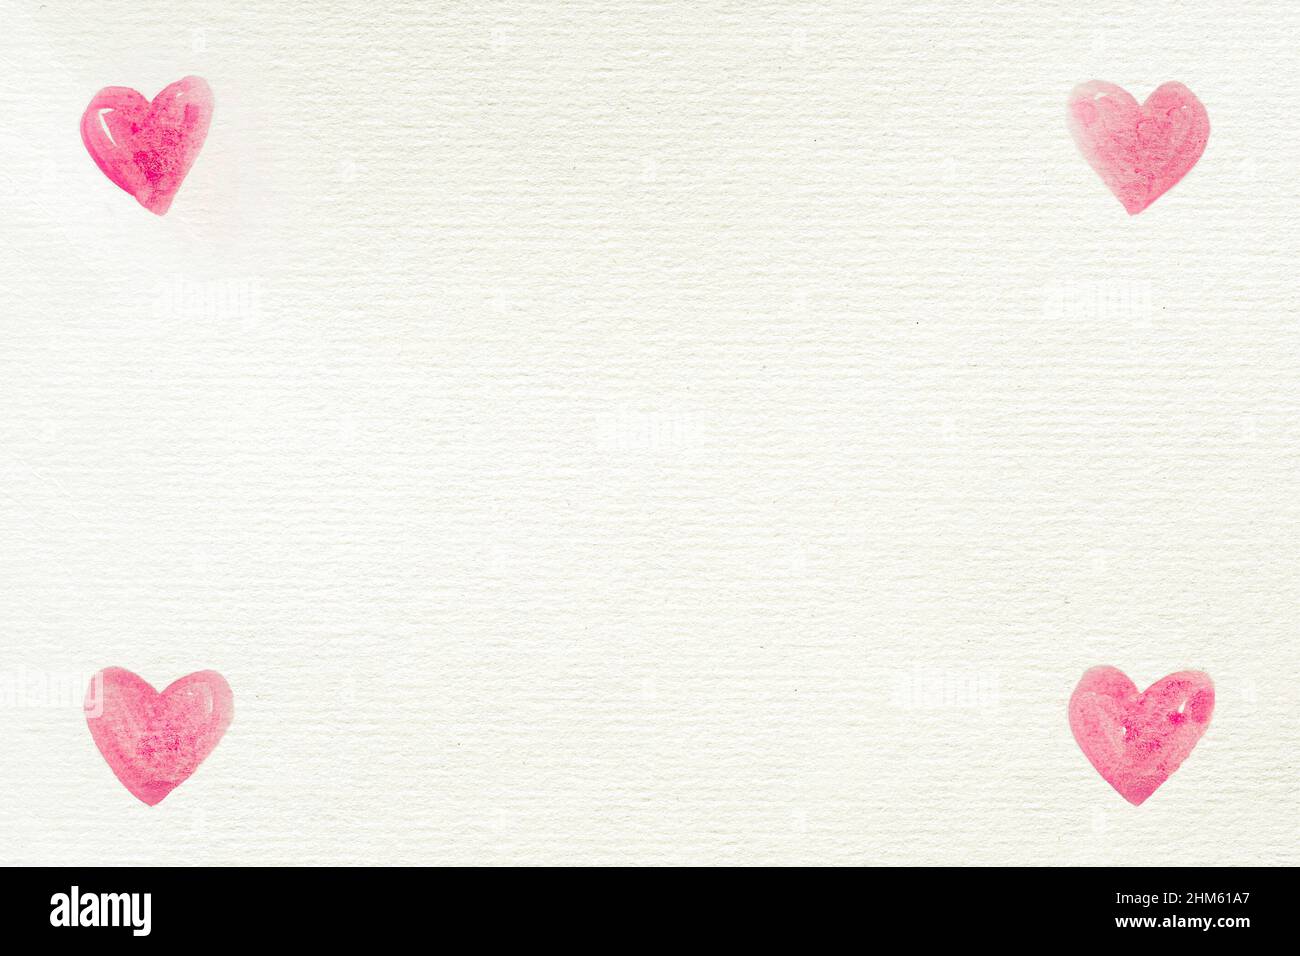 El fondo del amor con cuatro corazones de acuarela pintados en las esquinas en un papel blanco reciclado para el día de San Valentín u otras celebraciones, carta, espacio Foto de stock